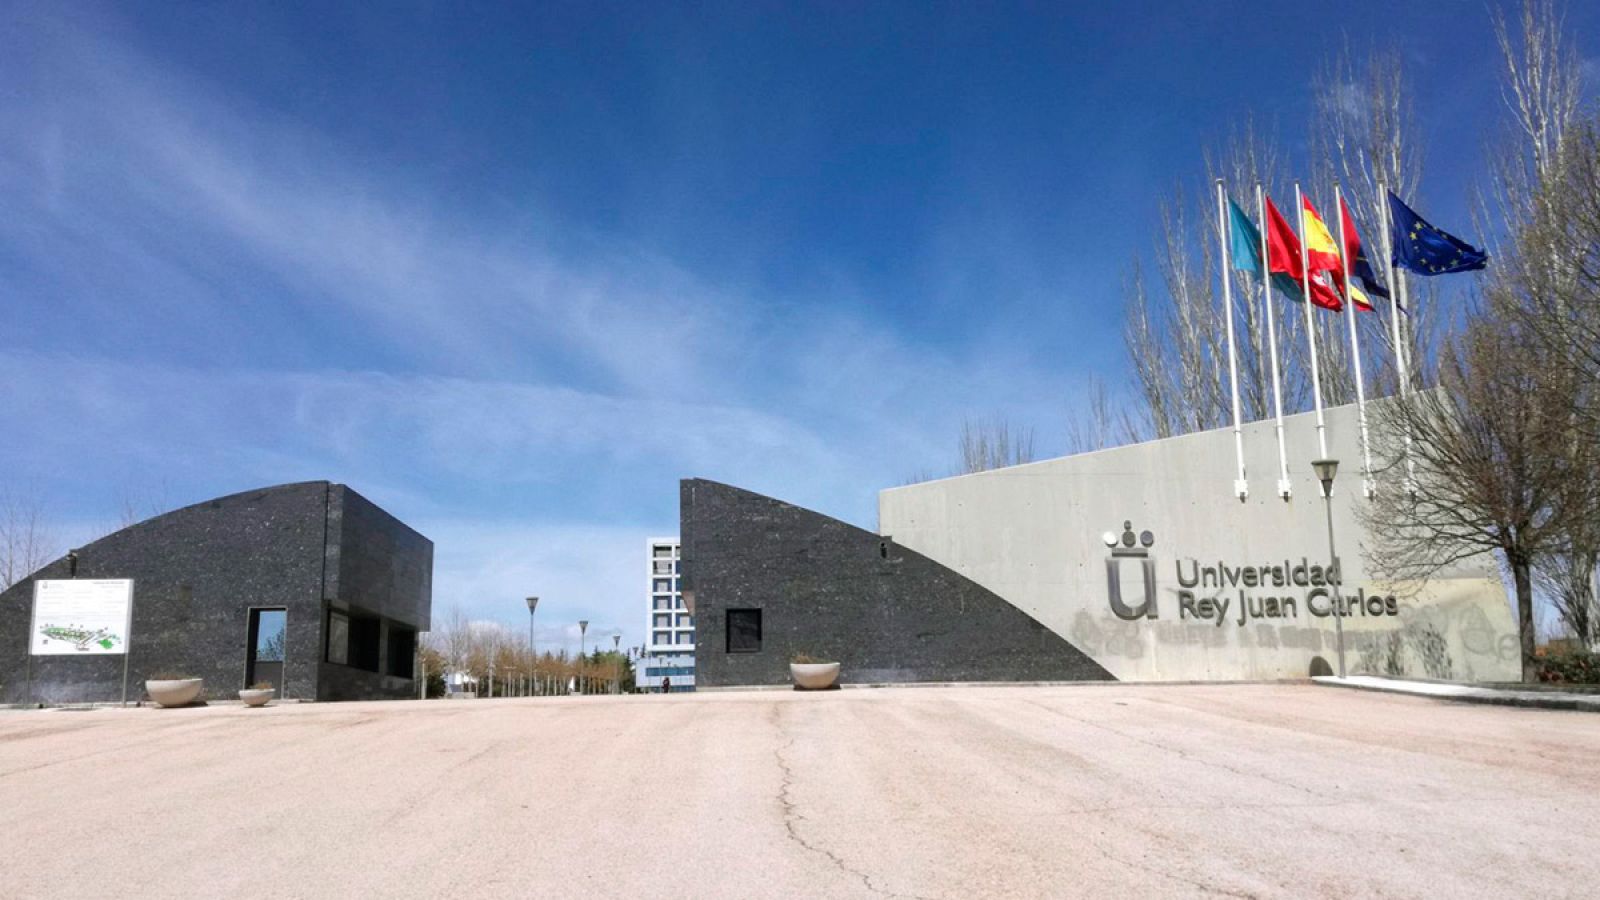 Vista general de la entrada de la Universidad Rey Juan Carlos (URJC) en Móstoles